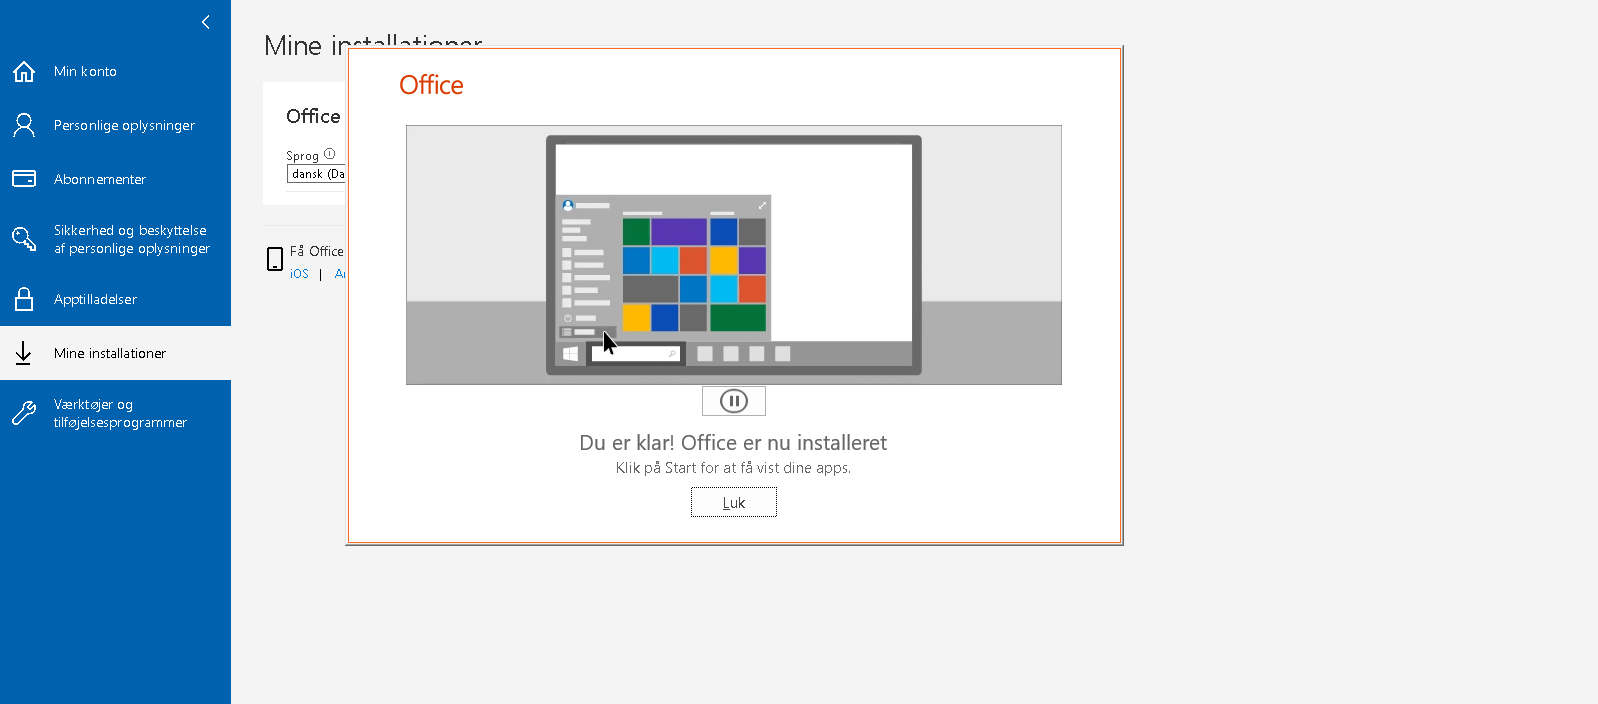 10microsoft_du_er_klar_office_er_nu_installeret